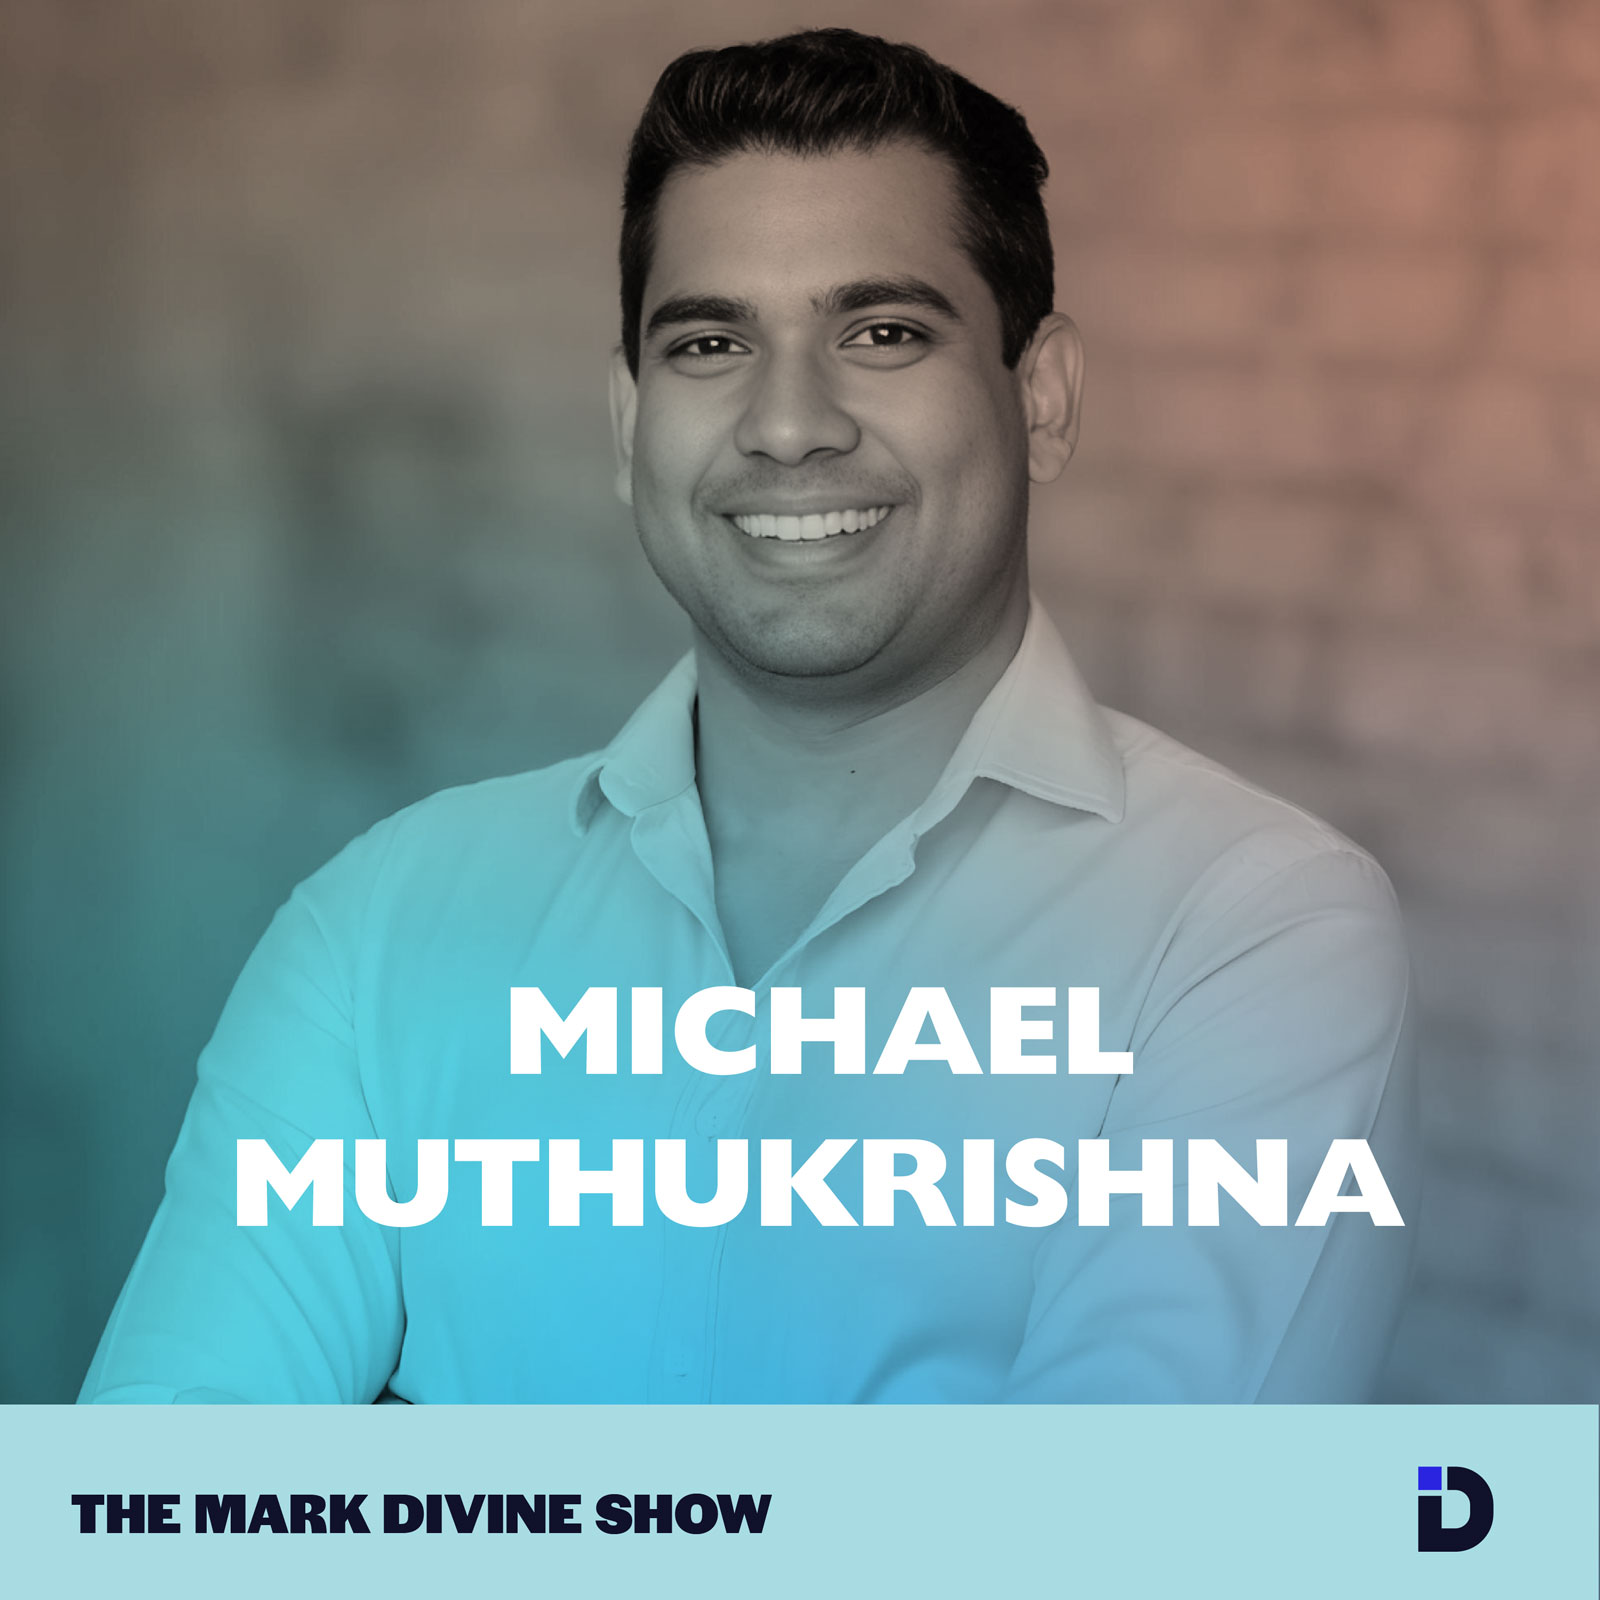 Michael Muthukrishna